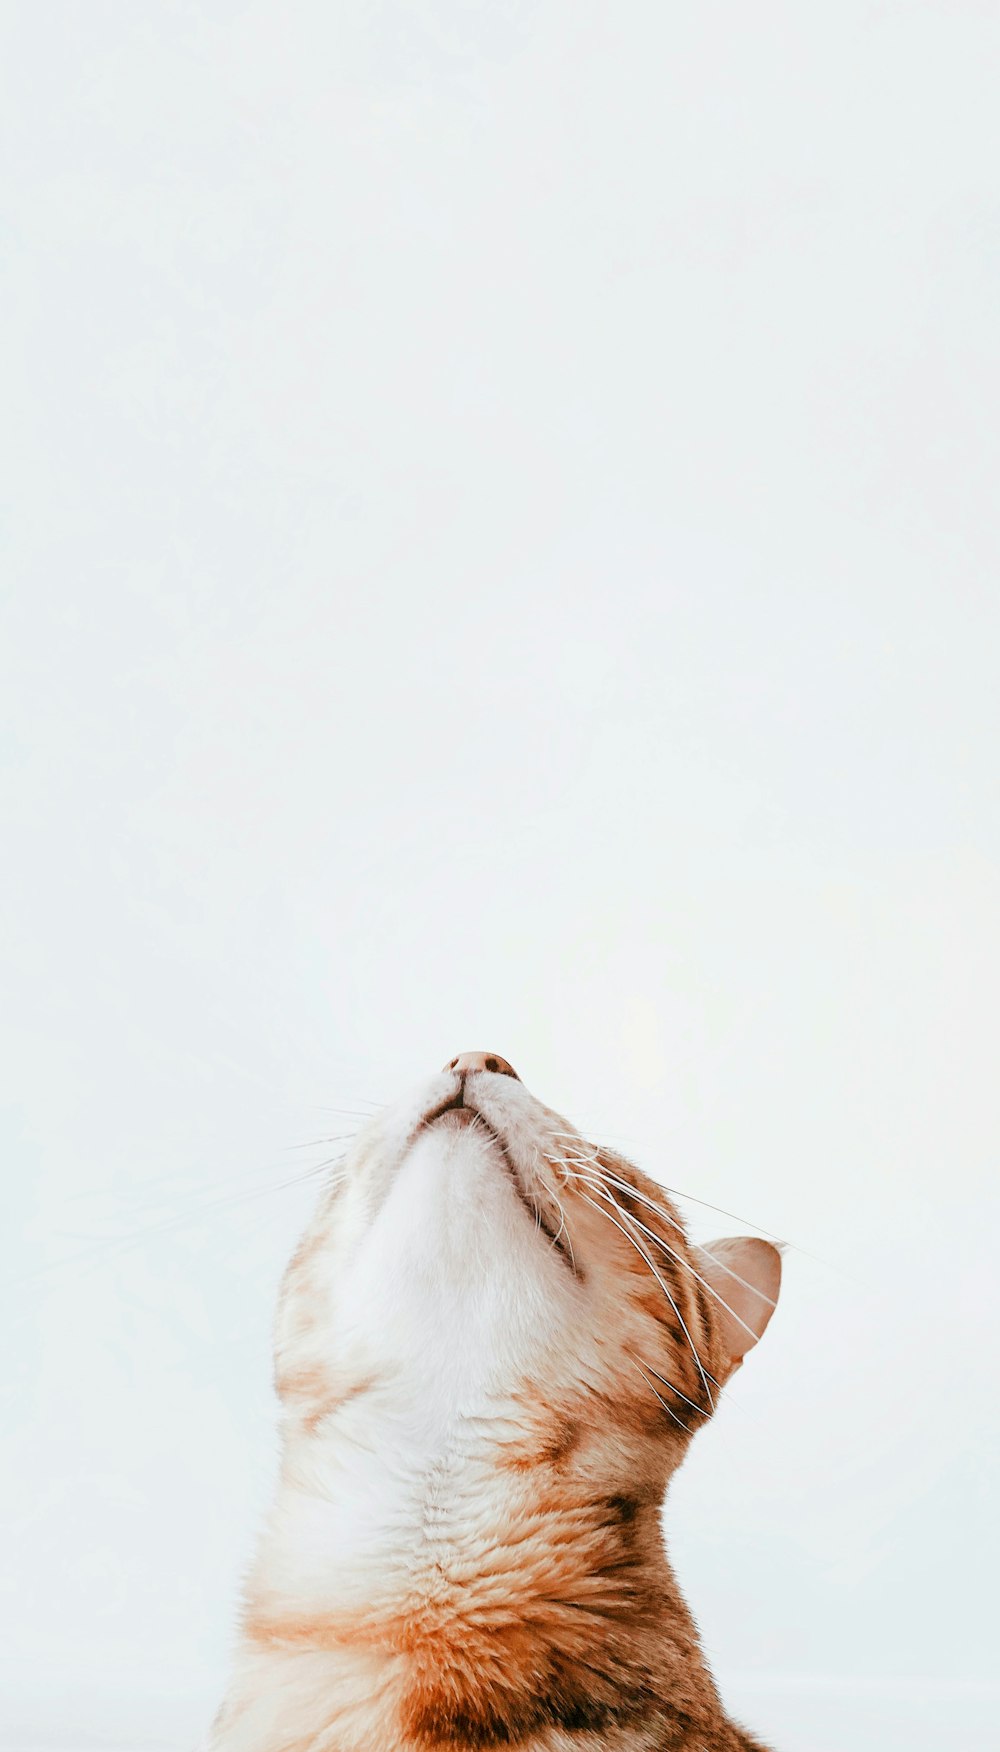 Un gato con la boca abierta